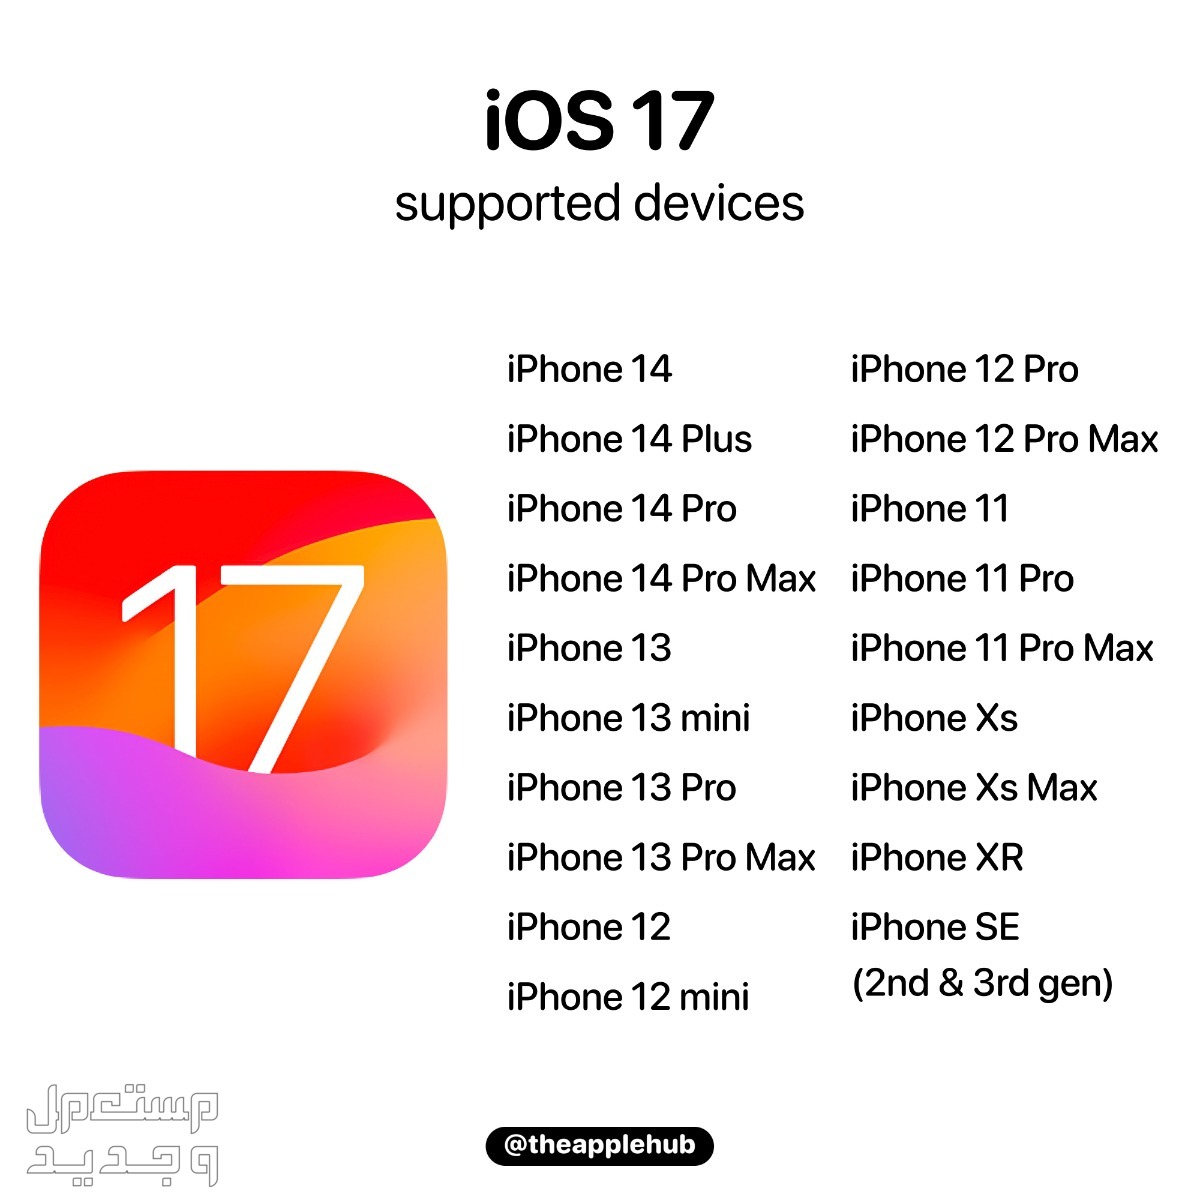 نظام iOS 17 لهواتف ايفون بمميزات جديدة تعرف عليها في موريتانيا